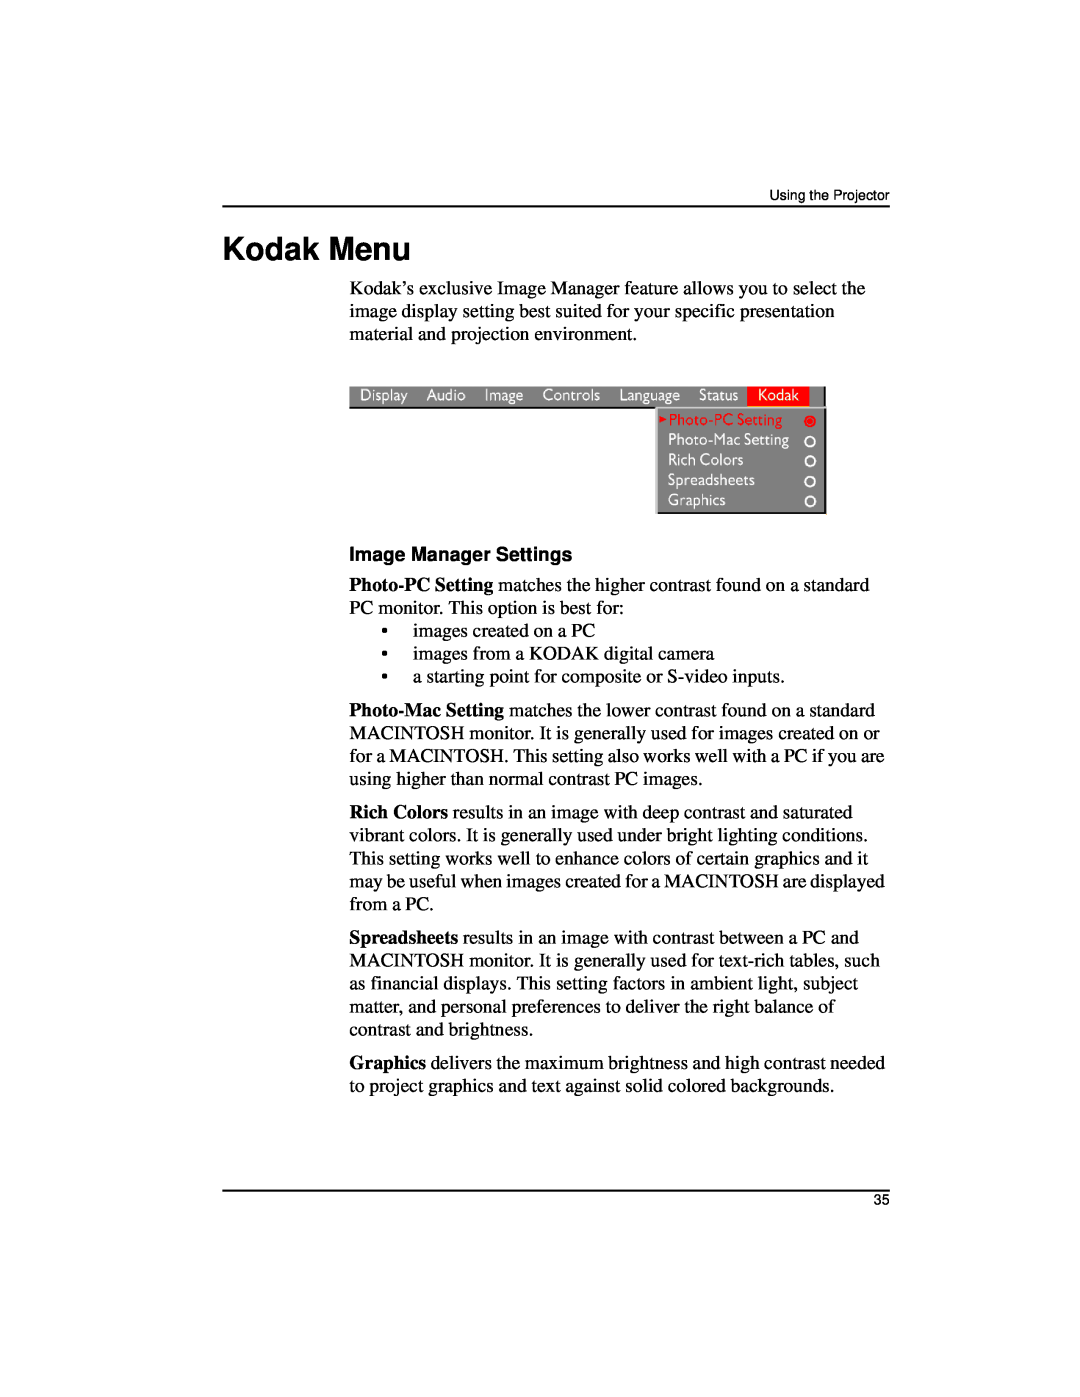 Kodak DP2000 manual Kodak Menu, Image Manager Settings 